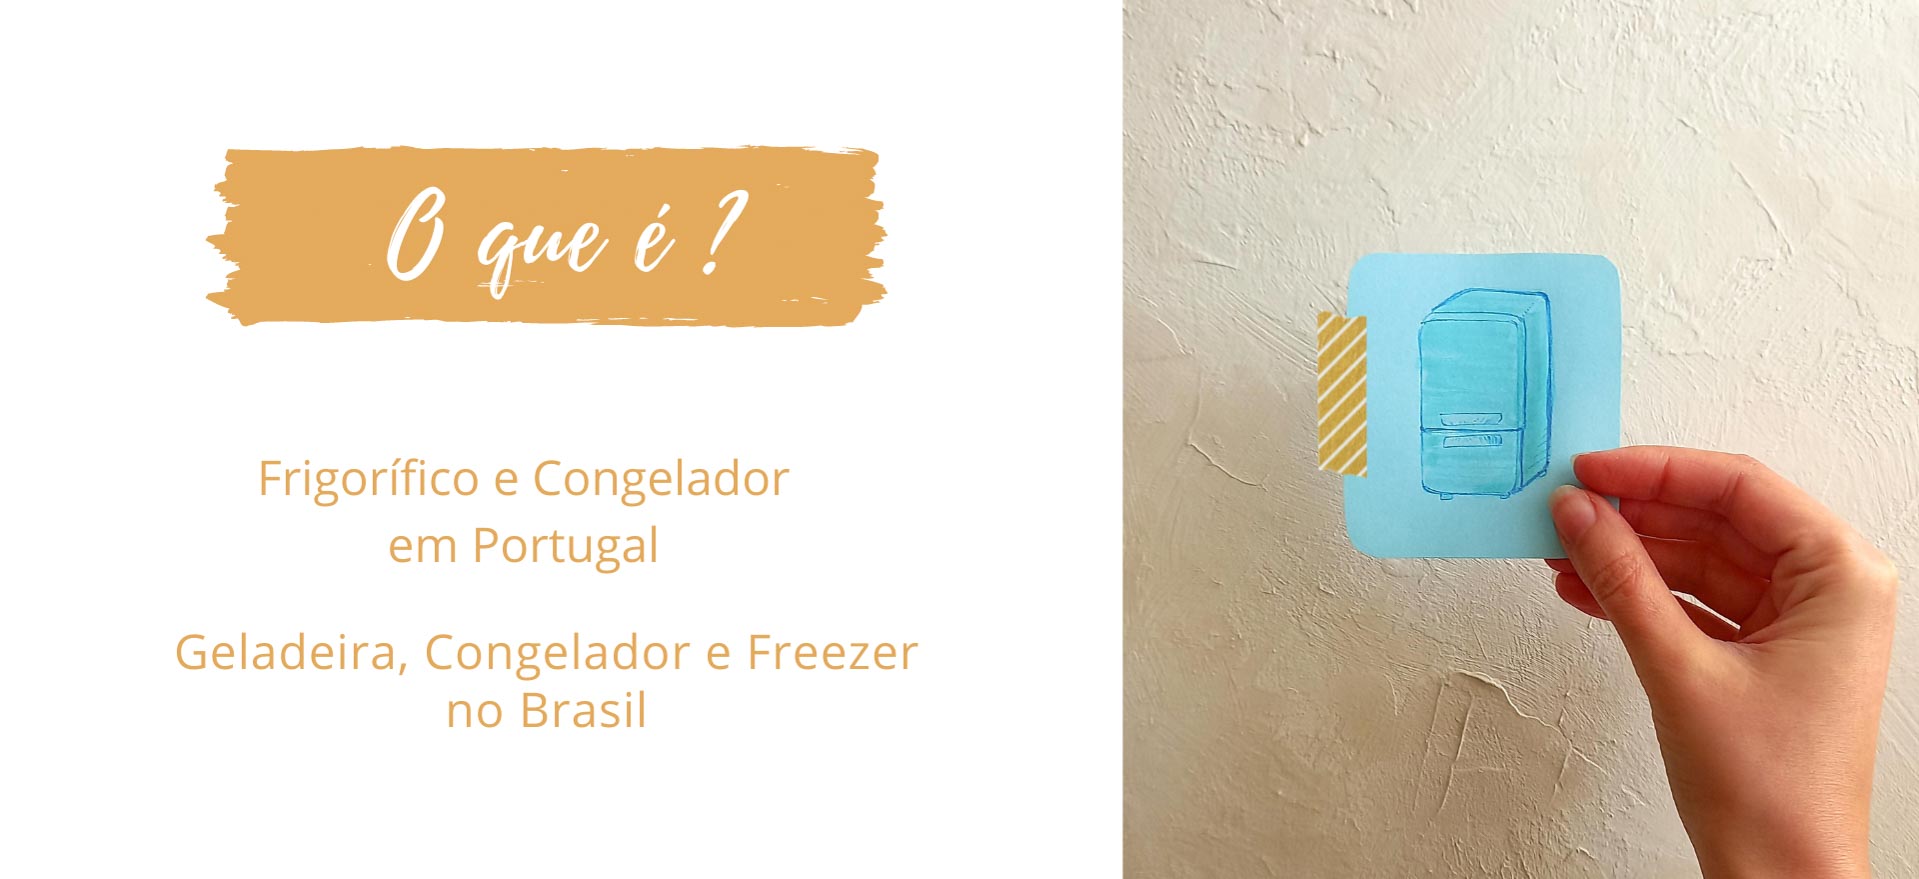 O que é Frigorífico e Congelador em Portugal? O que é Geladeira, Congelador  e Freezer no Brasil? – Arquetípico Cozinha Inusitada